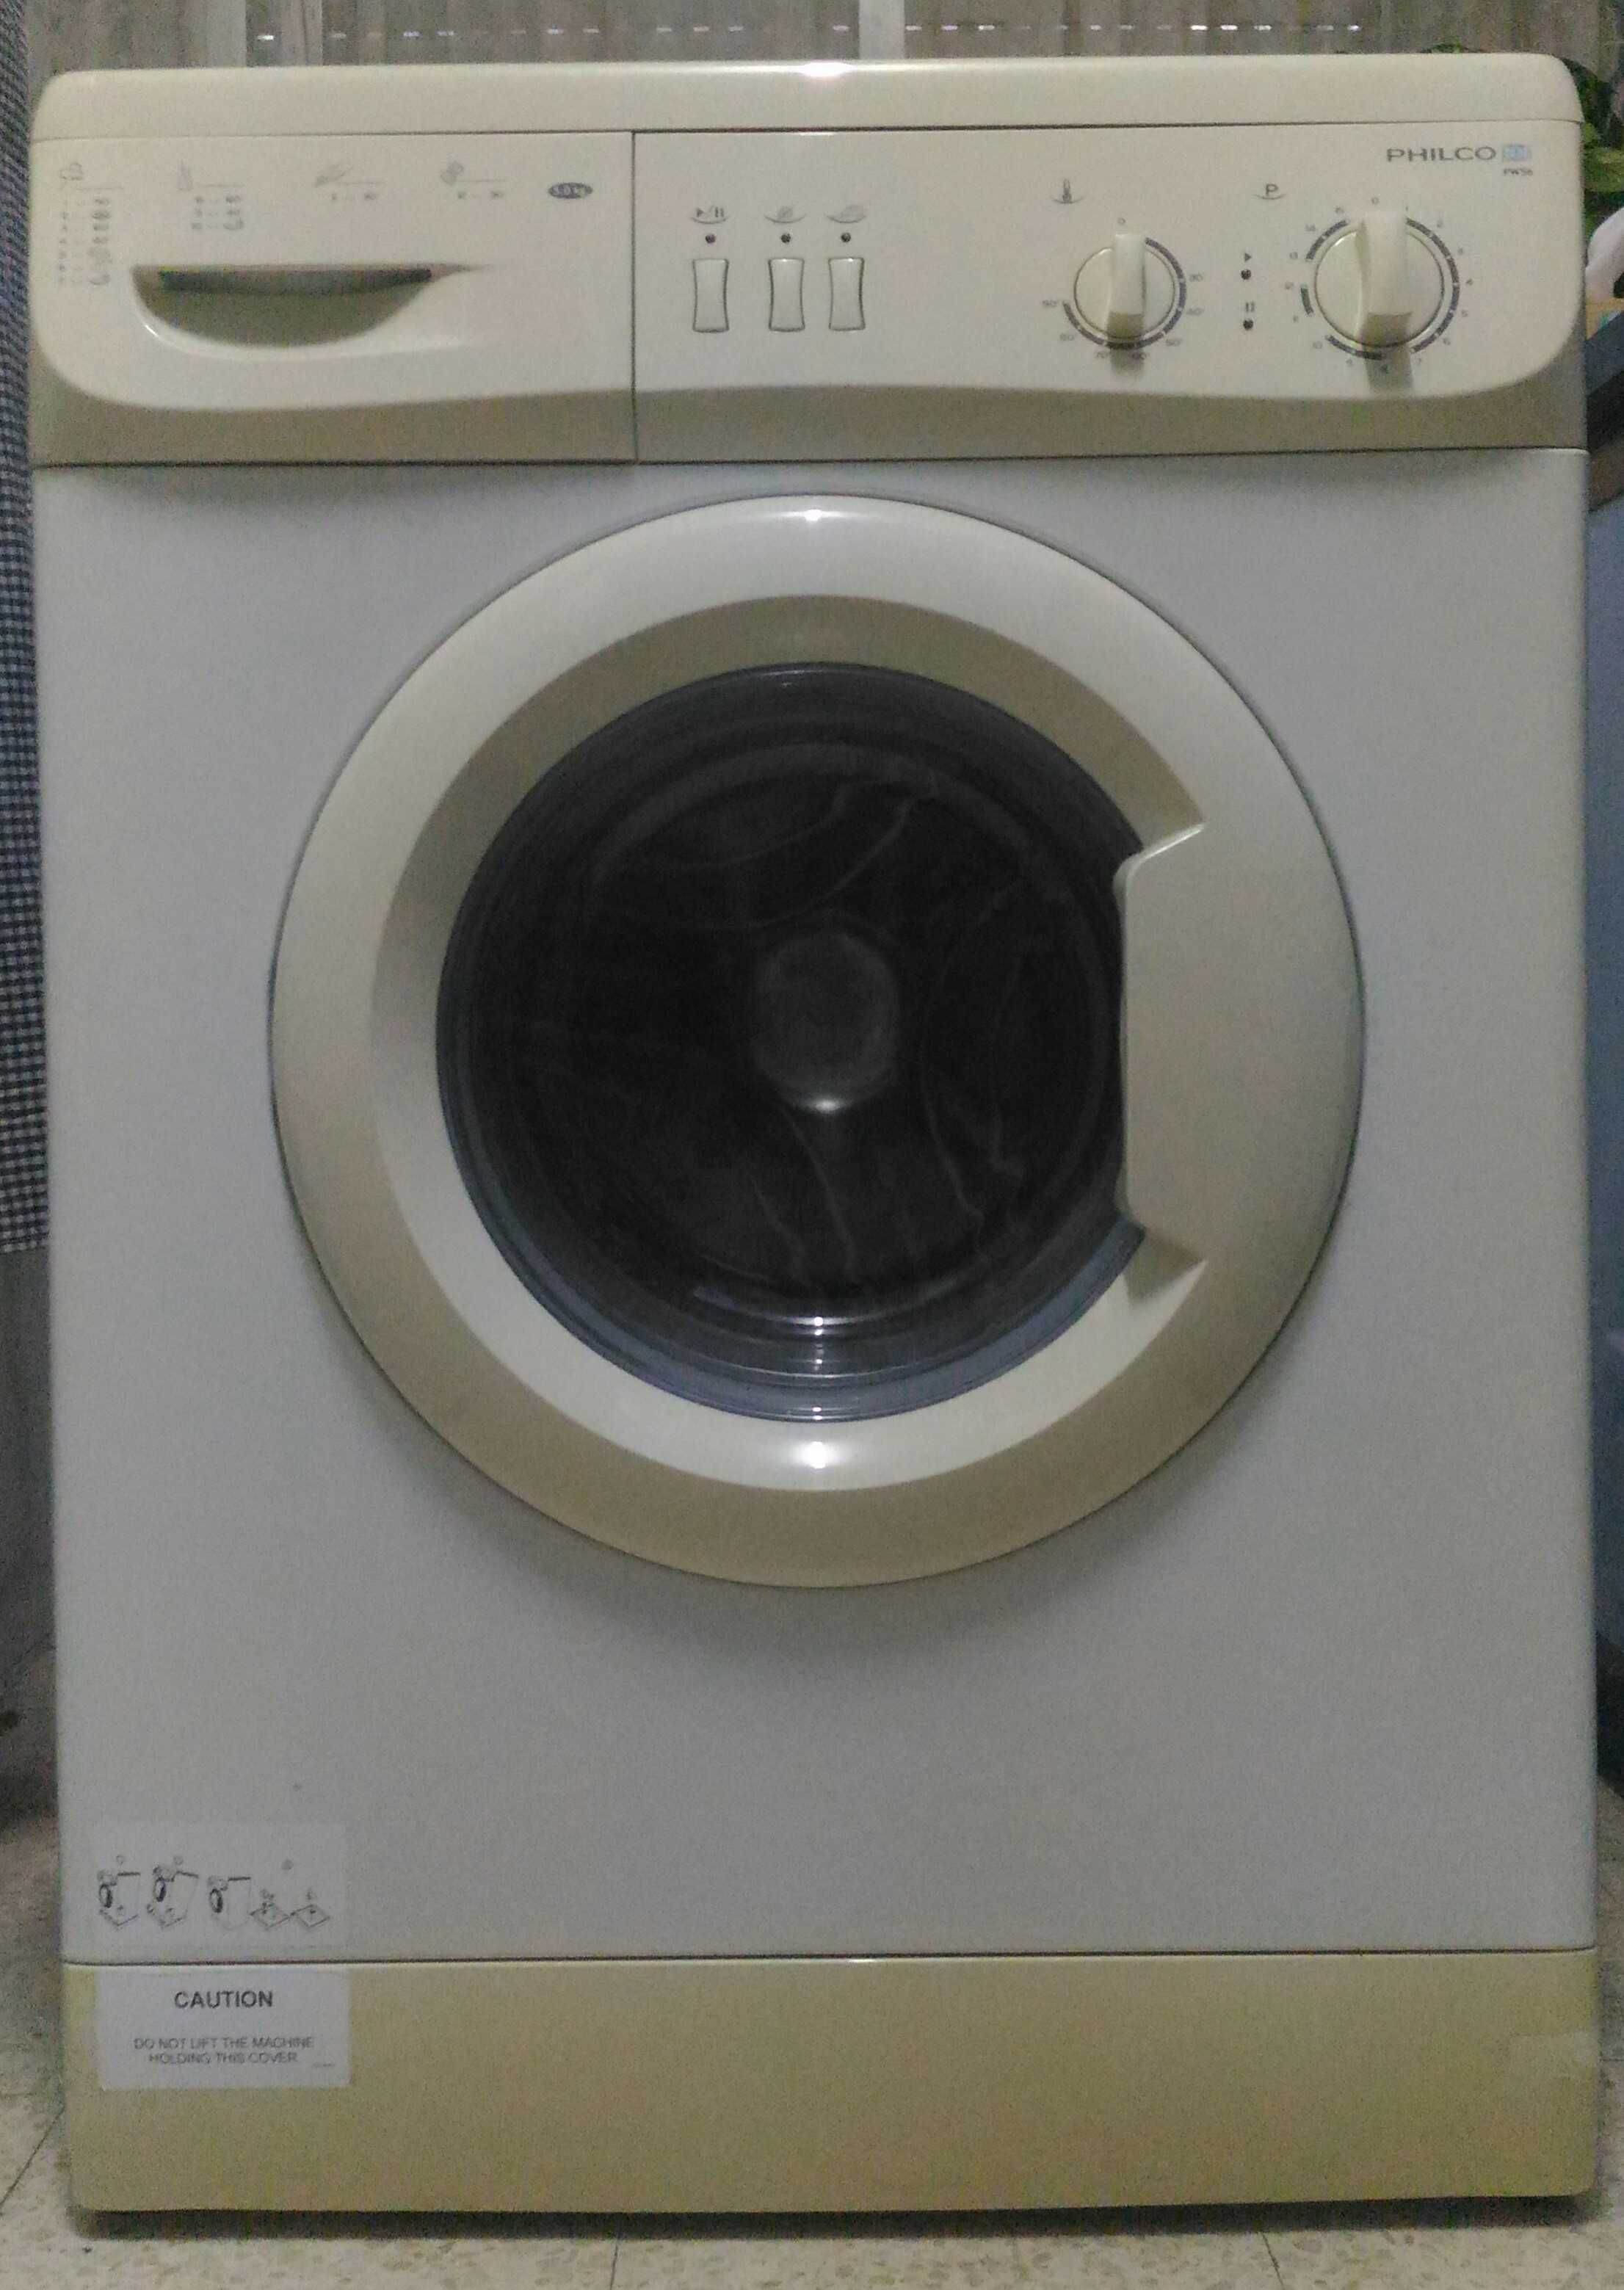 Maquina de lavar ropa Philco, estado impecavel, foi usada pouco tempo